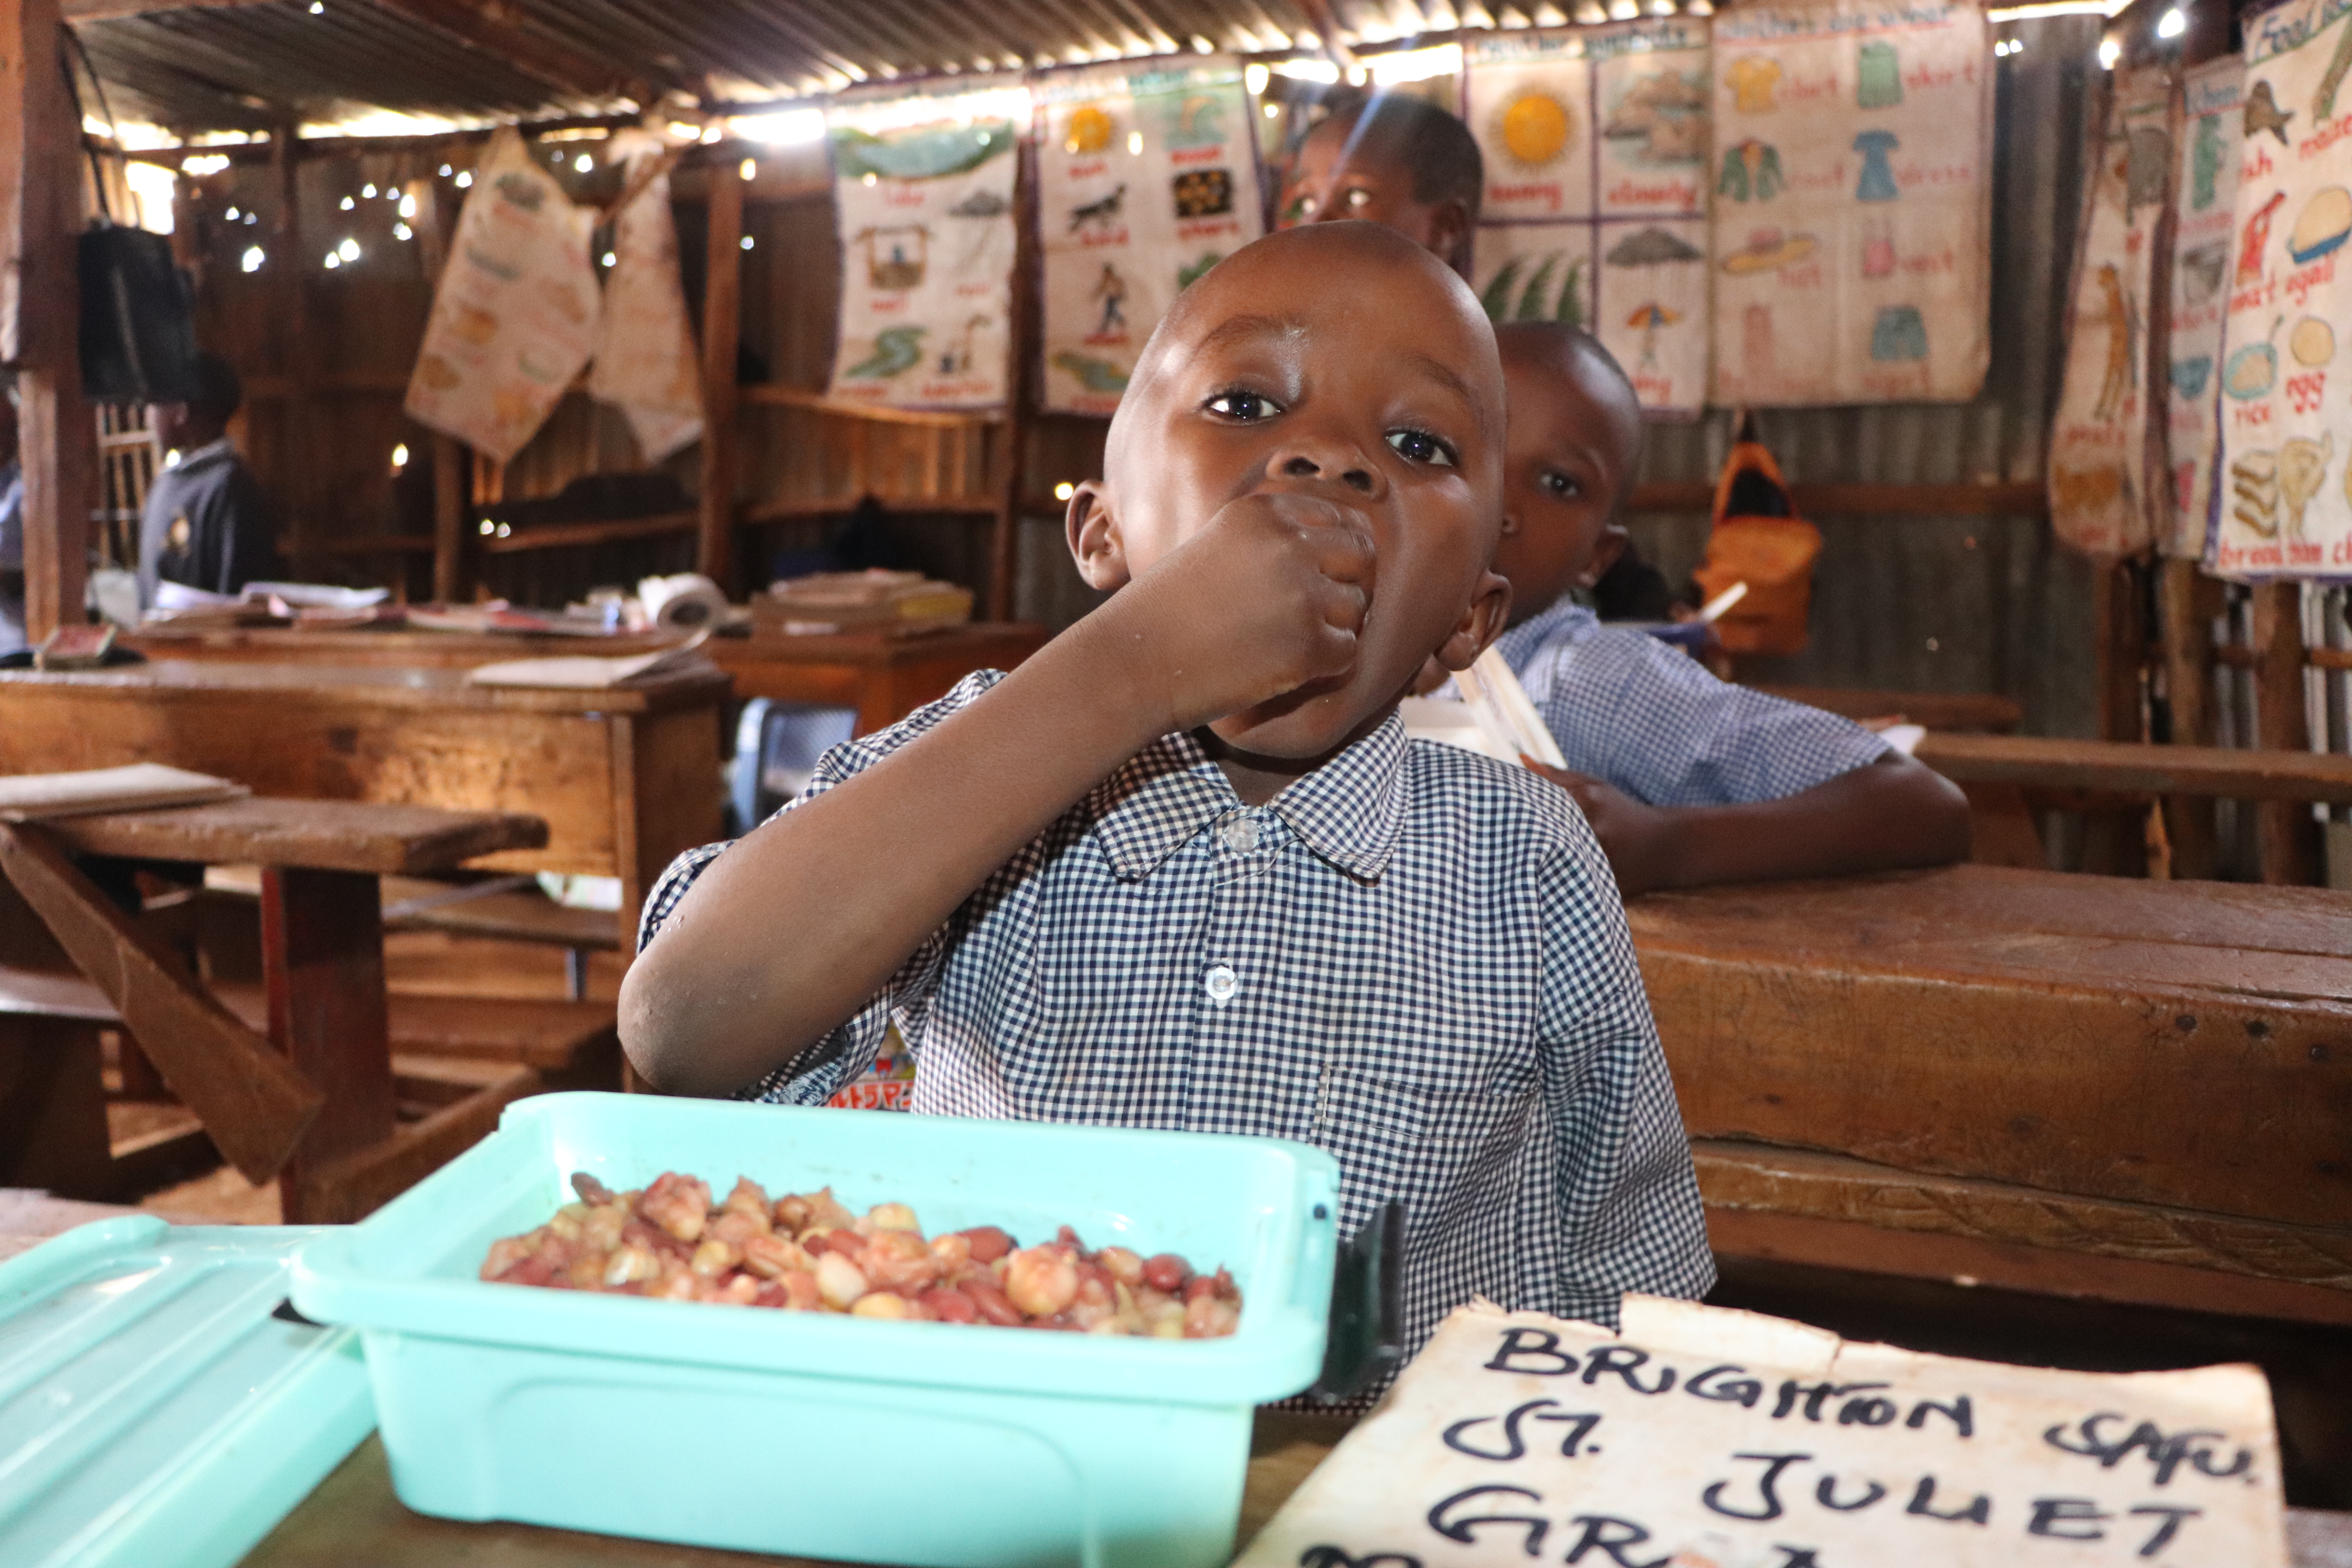 Ein Grundschulkind steckt sich Essen mit der Hand in den Mund. Es sitzt an einer Schulbank, auf der ein Kunststoffbehälter mit Essen steht.